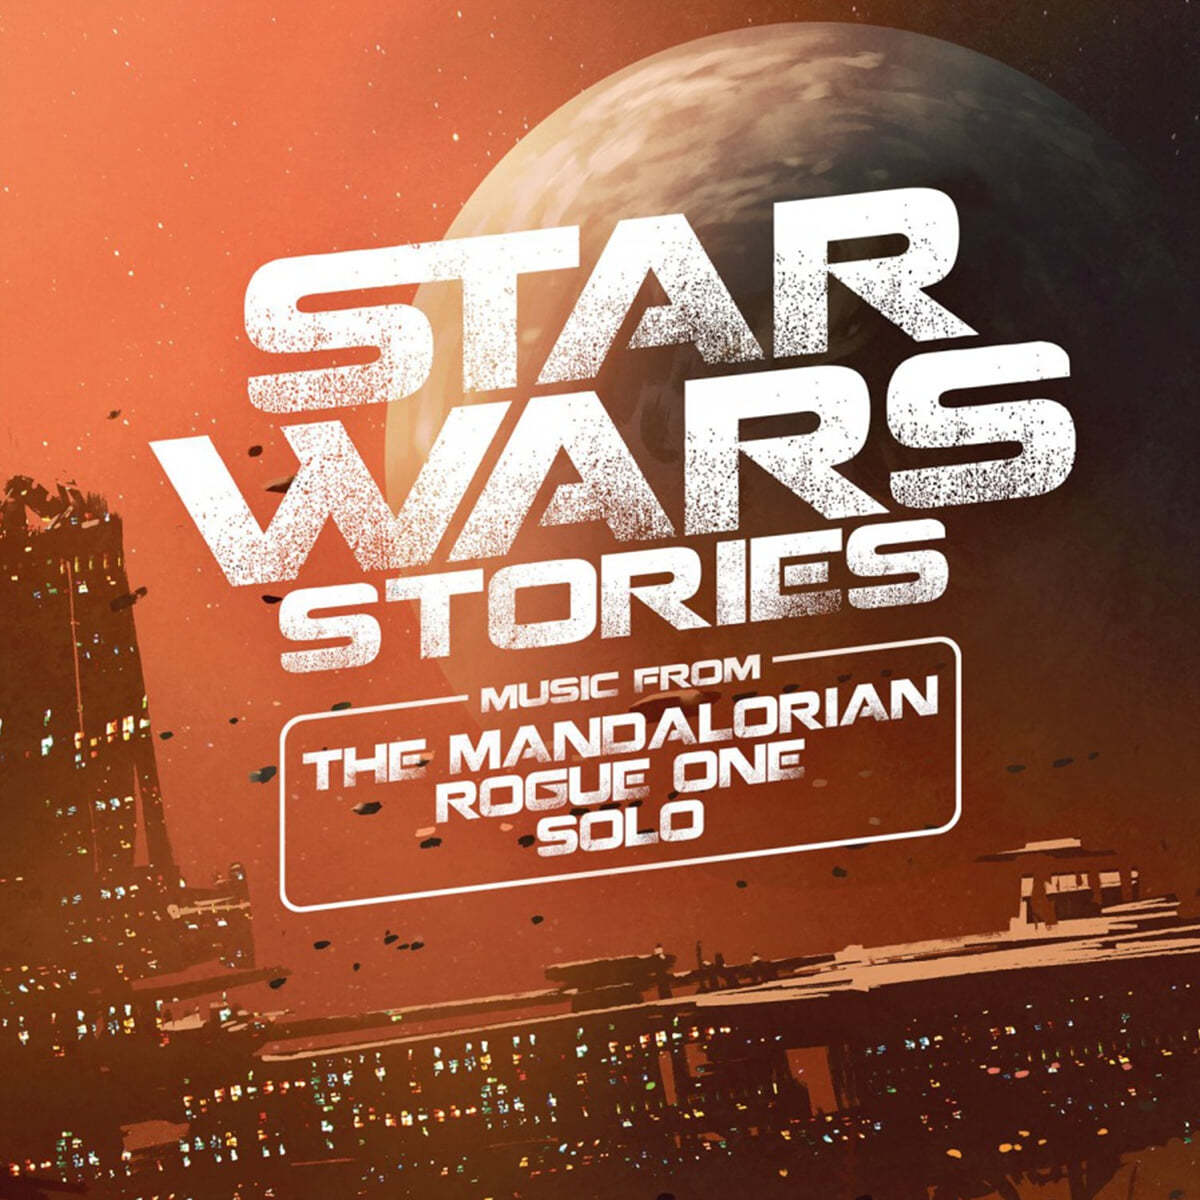 스타워즈 스토리: 만달로리안 / 로그 원 / 솔로 영화음악 (Star Wars Stories: Mandalorian, Rogue One And Solo OST) [주홍 컬러 2LP]